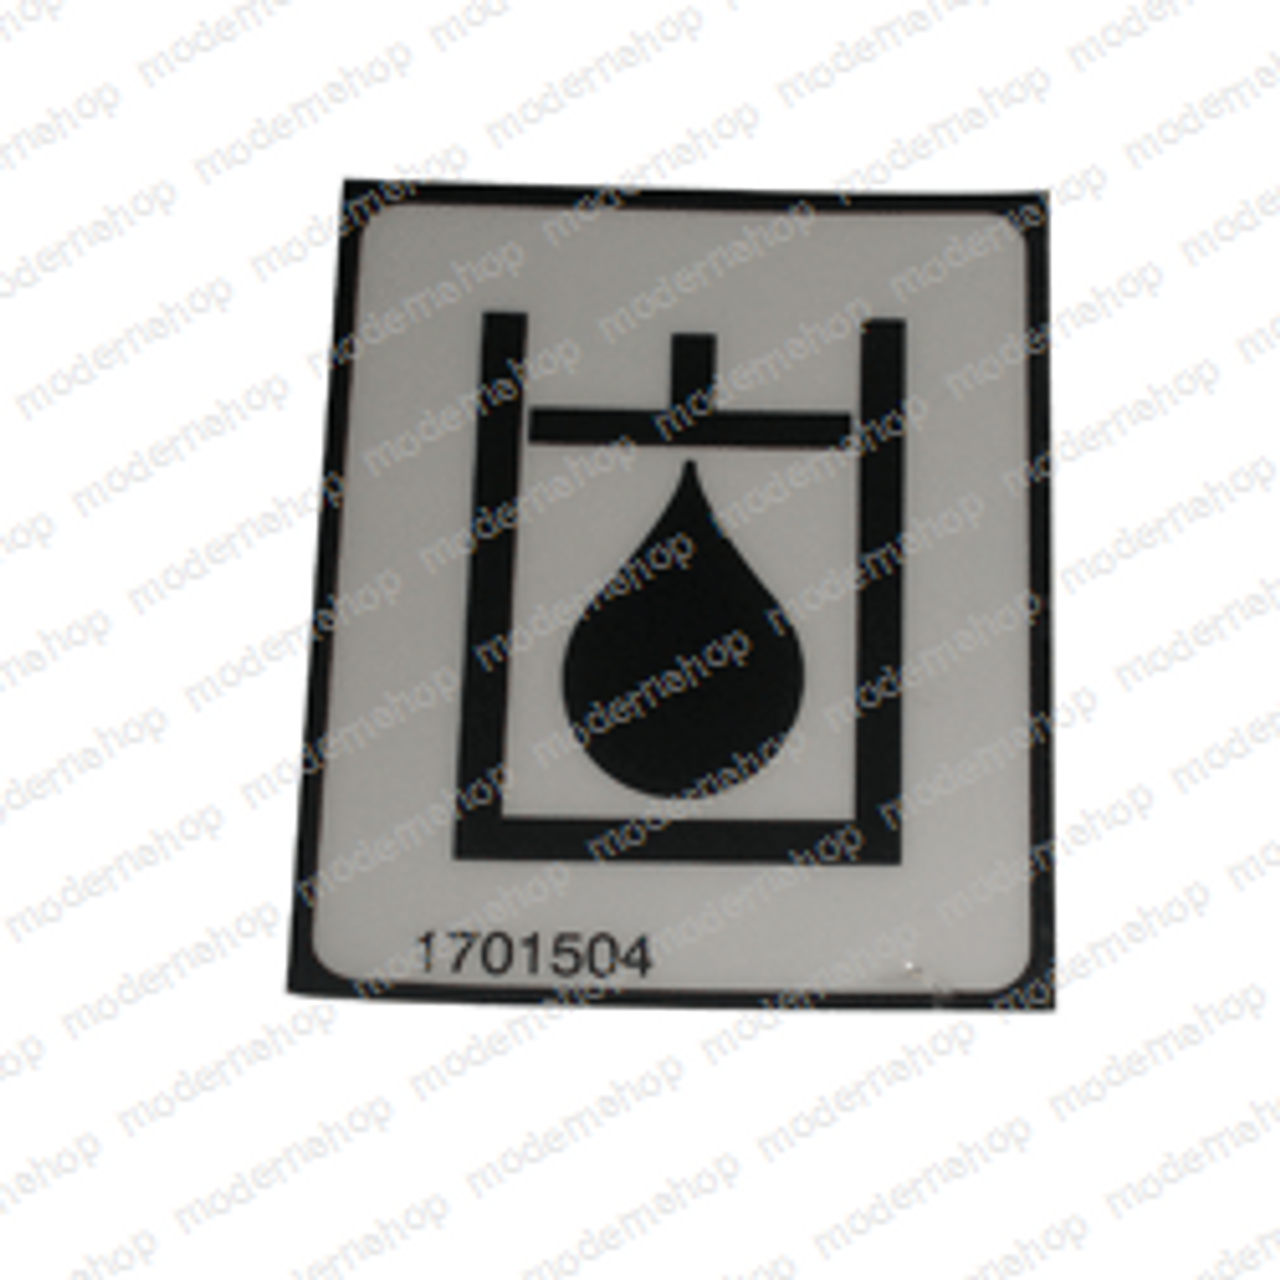 1701504: Gradall DECAL - HYD OIL